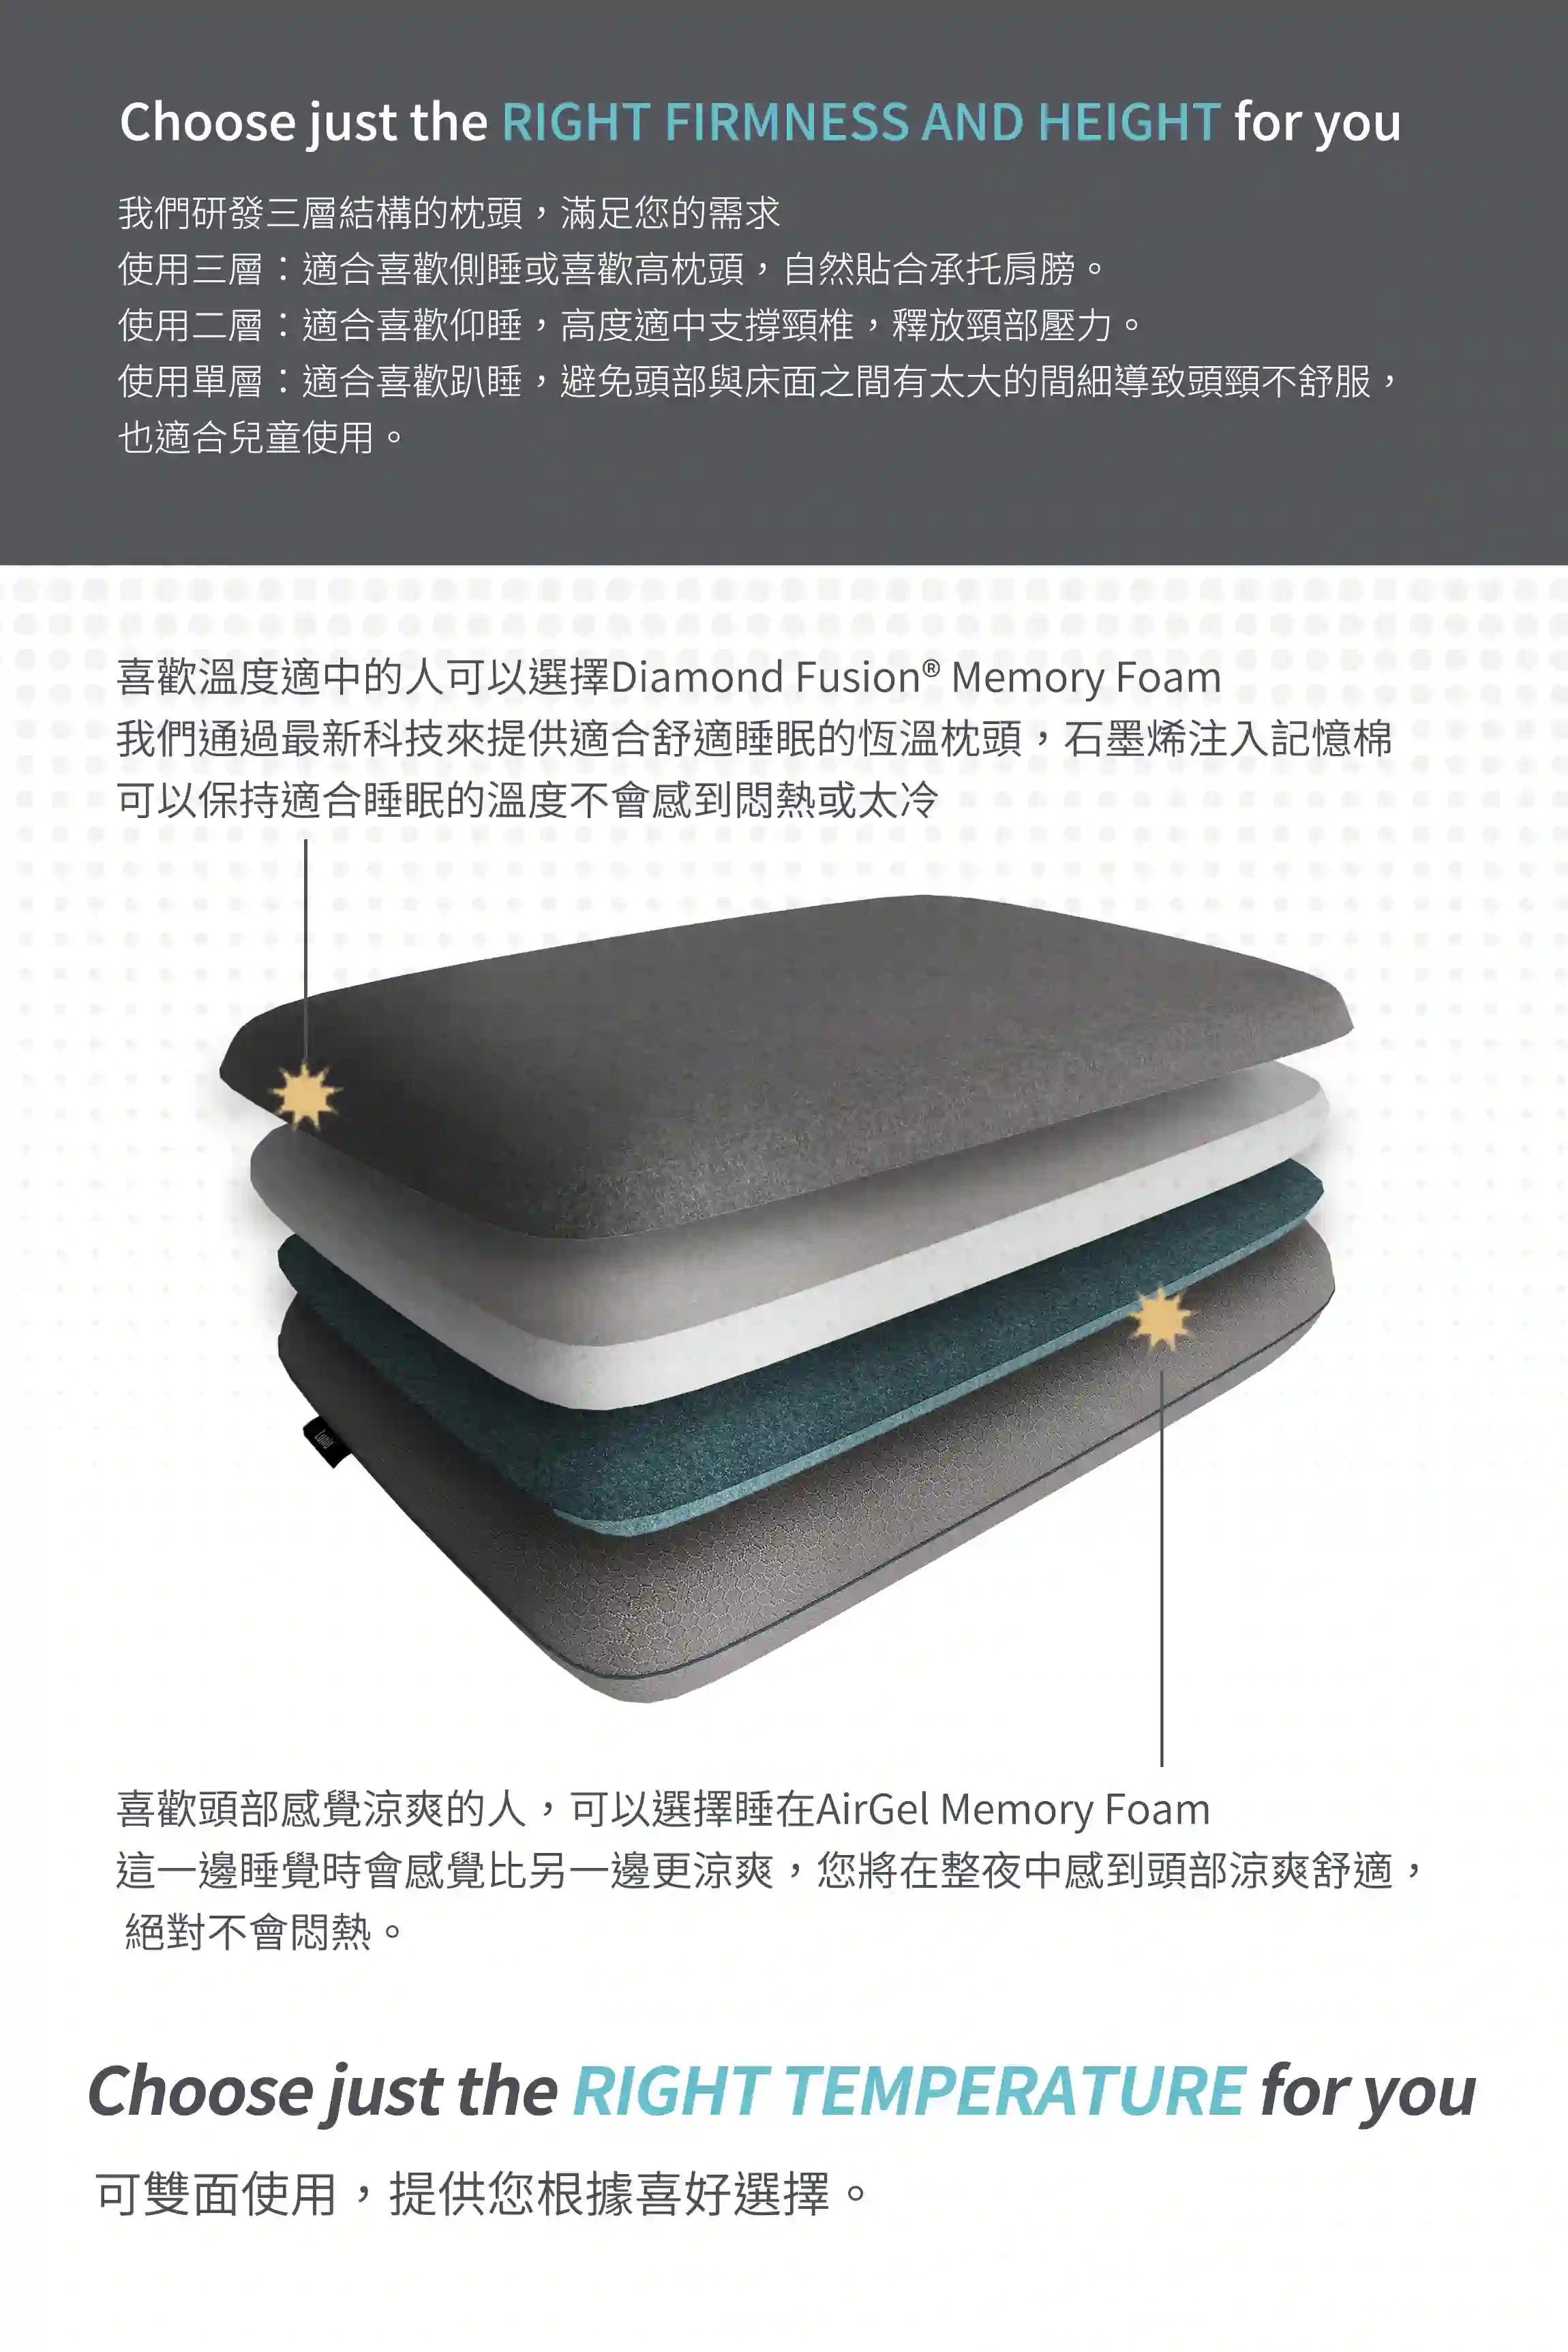 Mercury石墨烯機能記憶枕具有三層結構，喜歡溫度適中可以睡石墨稀記憶層，喜歡涼爽感受可以睡冷凝凝膠記憶層